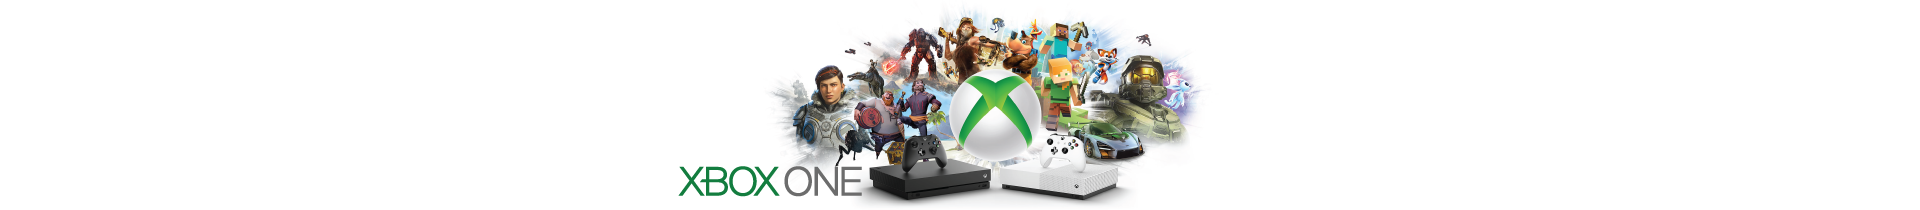 Jogos Xbox One | Compra no Outlet dos Videojogos | Press Start